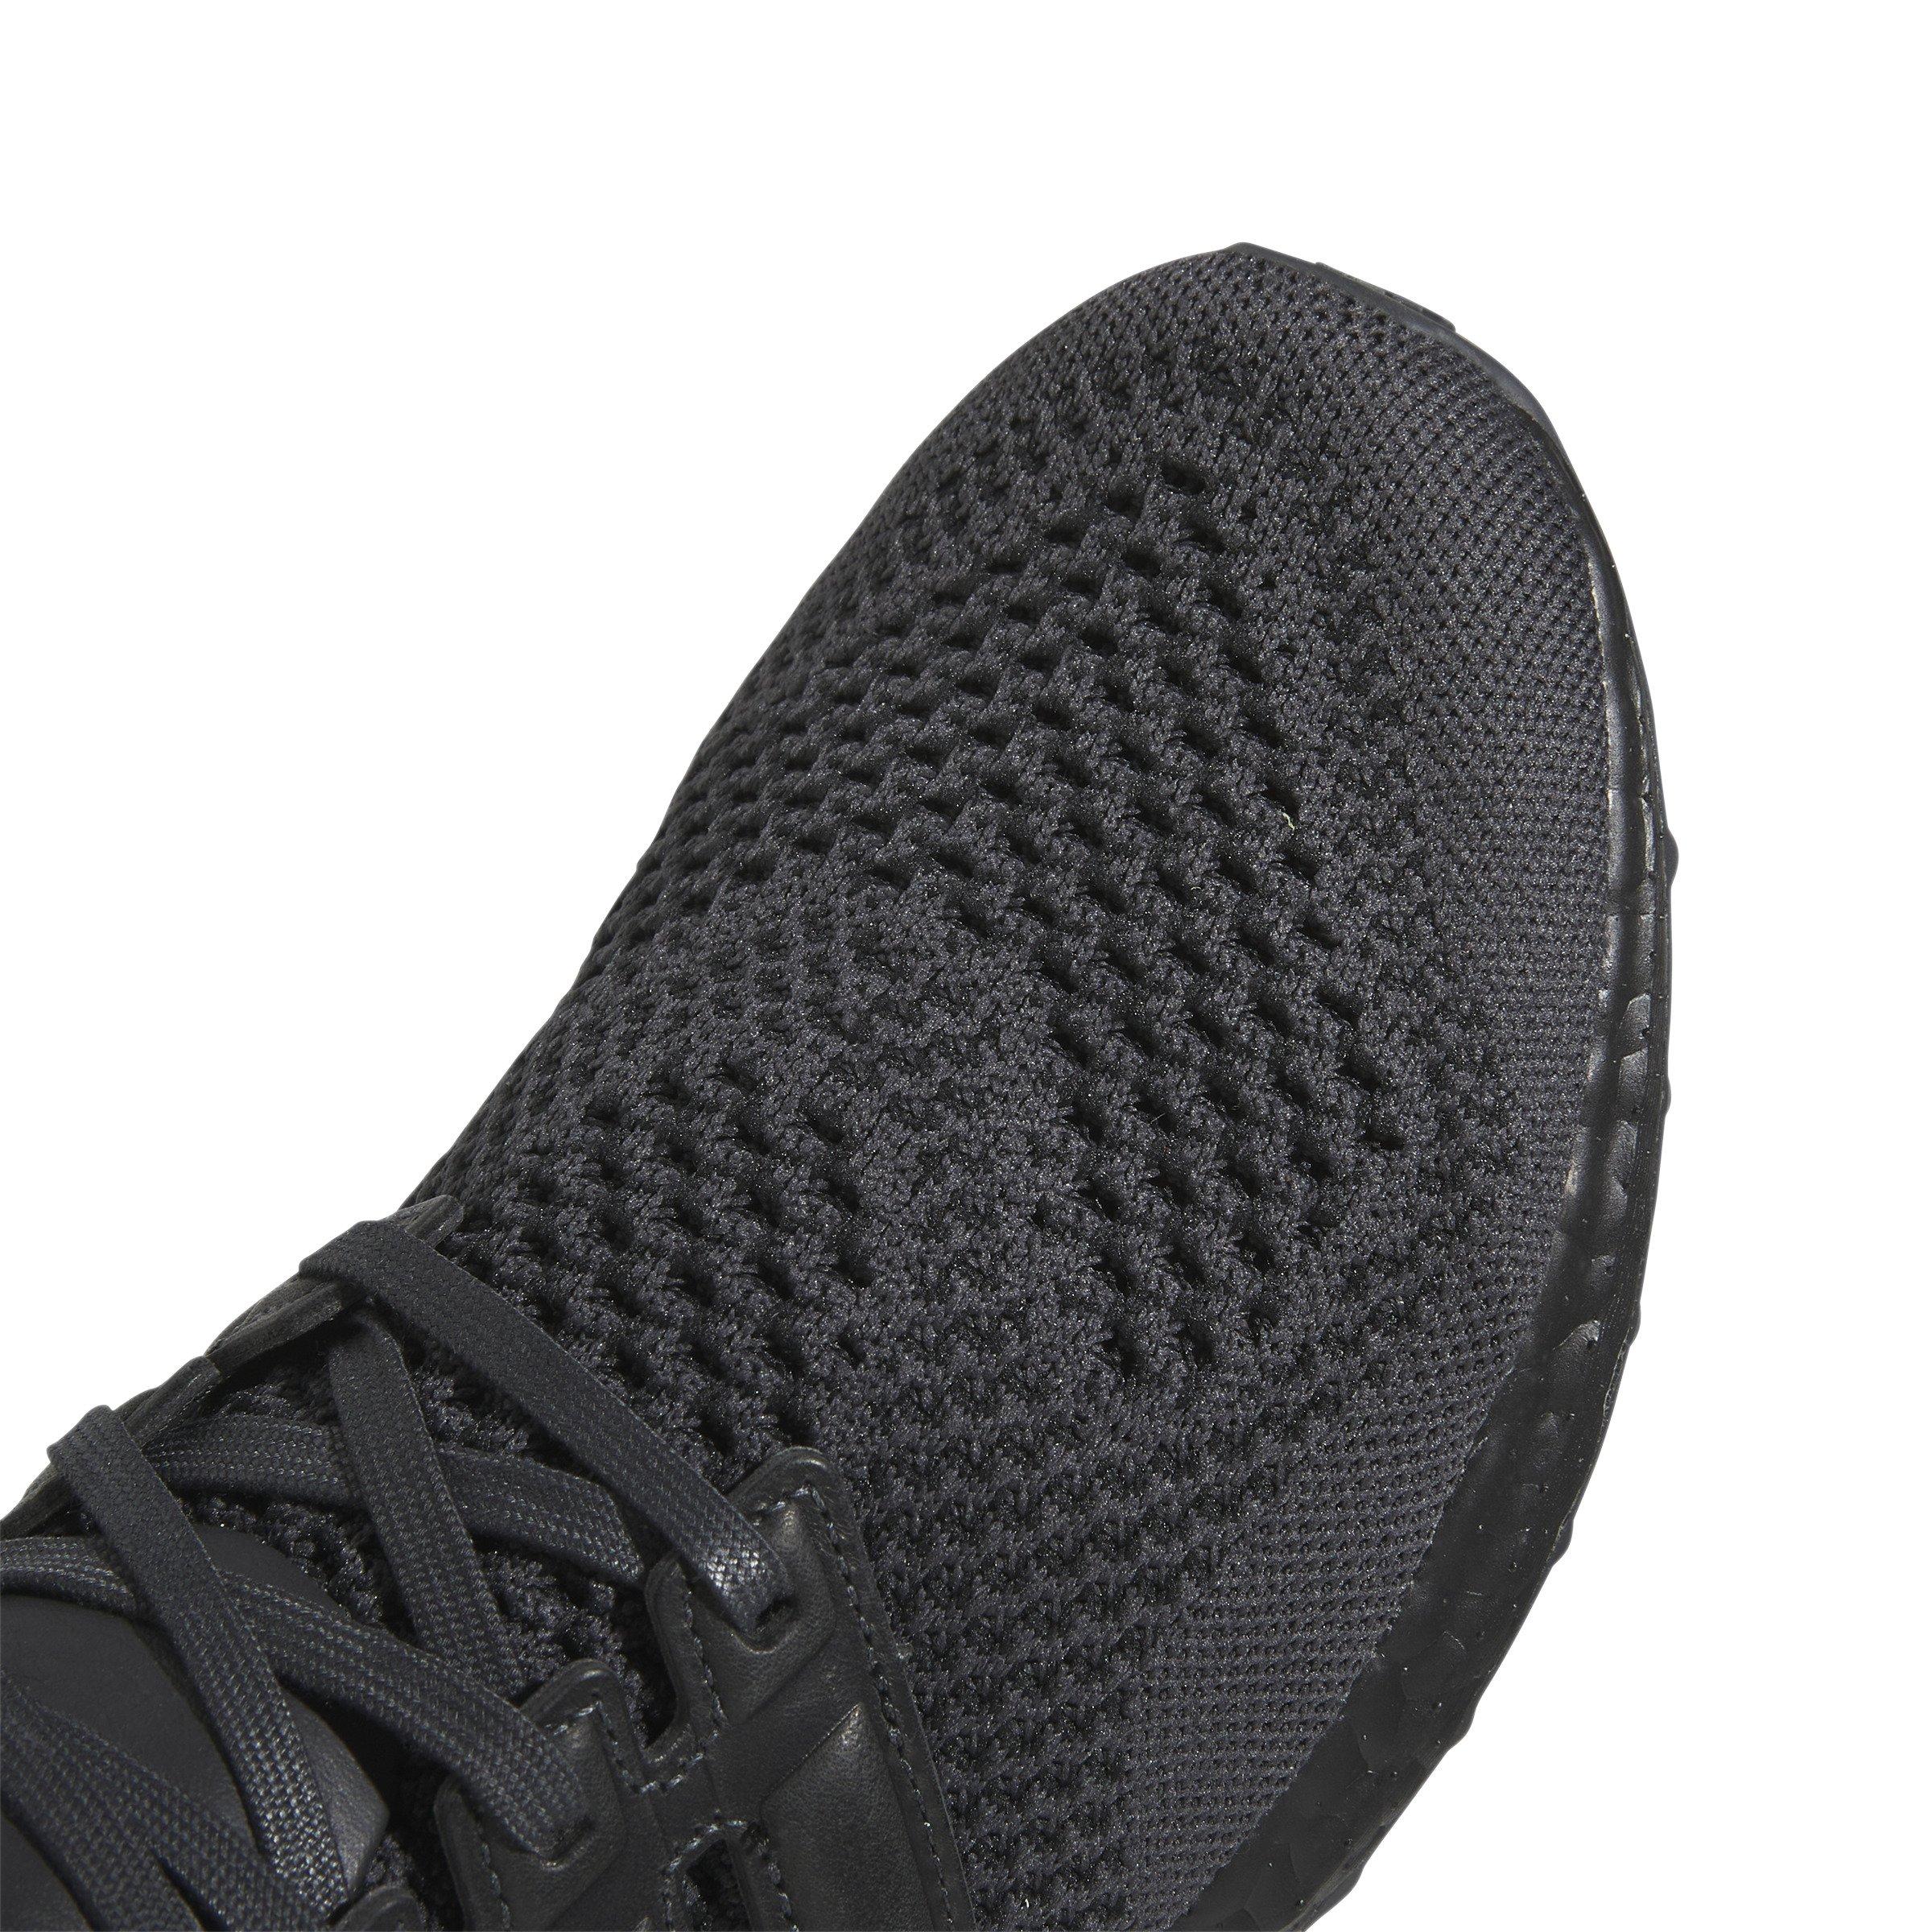 Voorspellen Aankoop Aas adidas Ultraboost 1.0 DNA "Carbon/Core Black" Men's Running Shoe